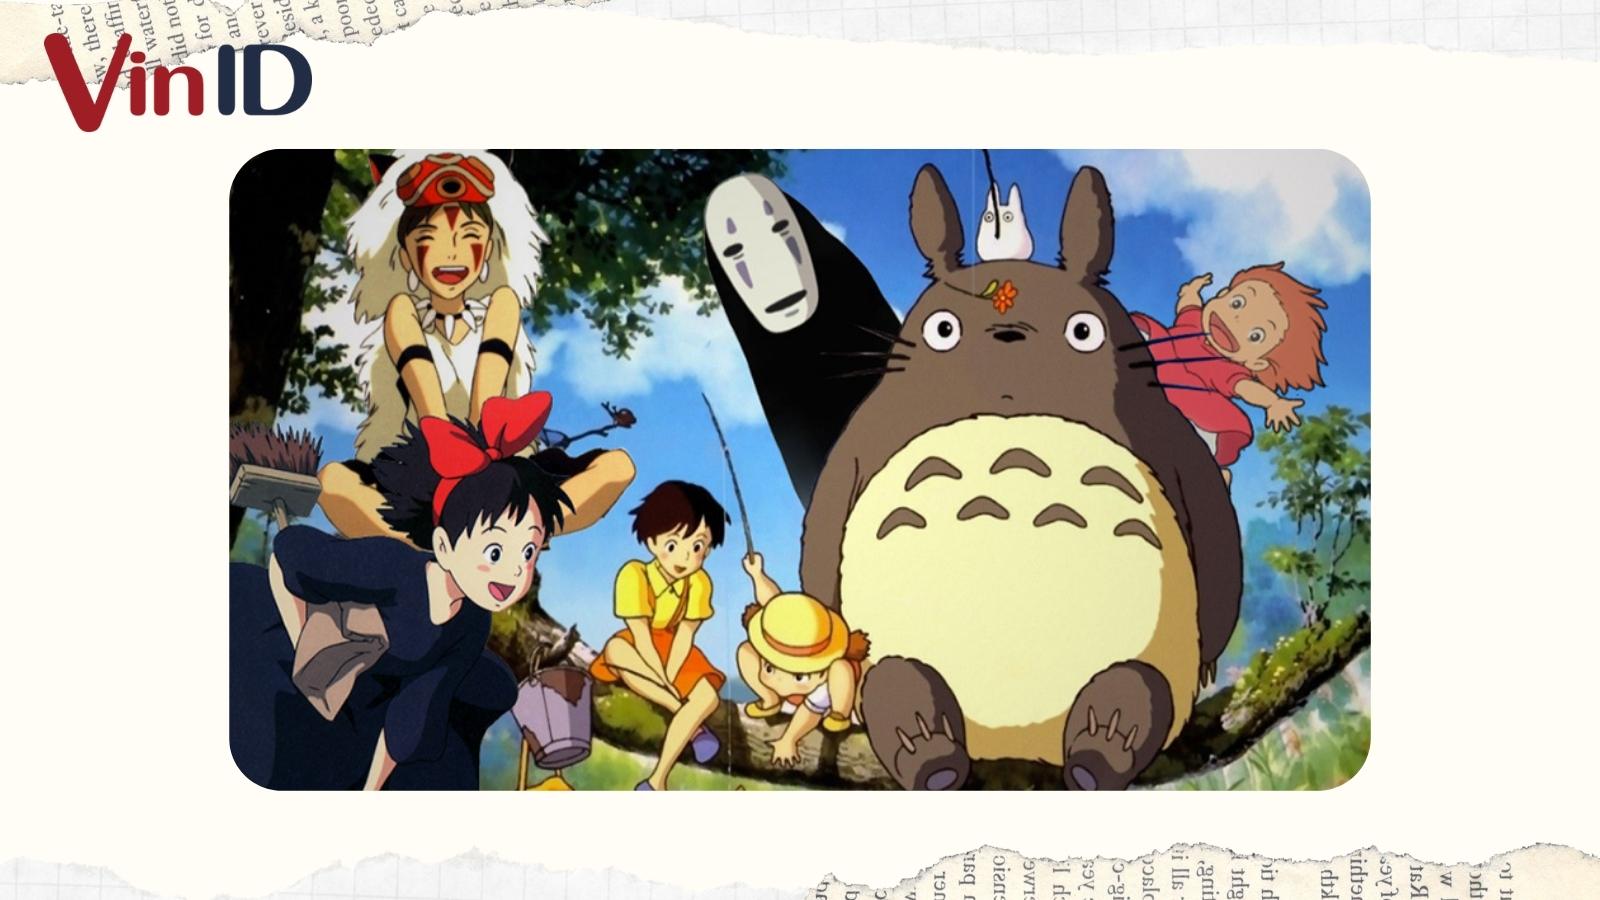 Phim hoạt hình Ghibli hay: Bạn sẽ có thể tận hưởng những câu chuyện tuyệt vời và thế giới tuyệt đẹp trong những bộ phim hoạt hình được sản xuất bởi Ghibli. Hãy tìm hiểu về những tác phẩm đầy cảm hứng, tình cảm và giá trị nhân văn từ nhà sản xuất nổi tiếng Nhật Bản này.